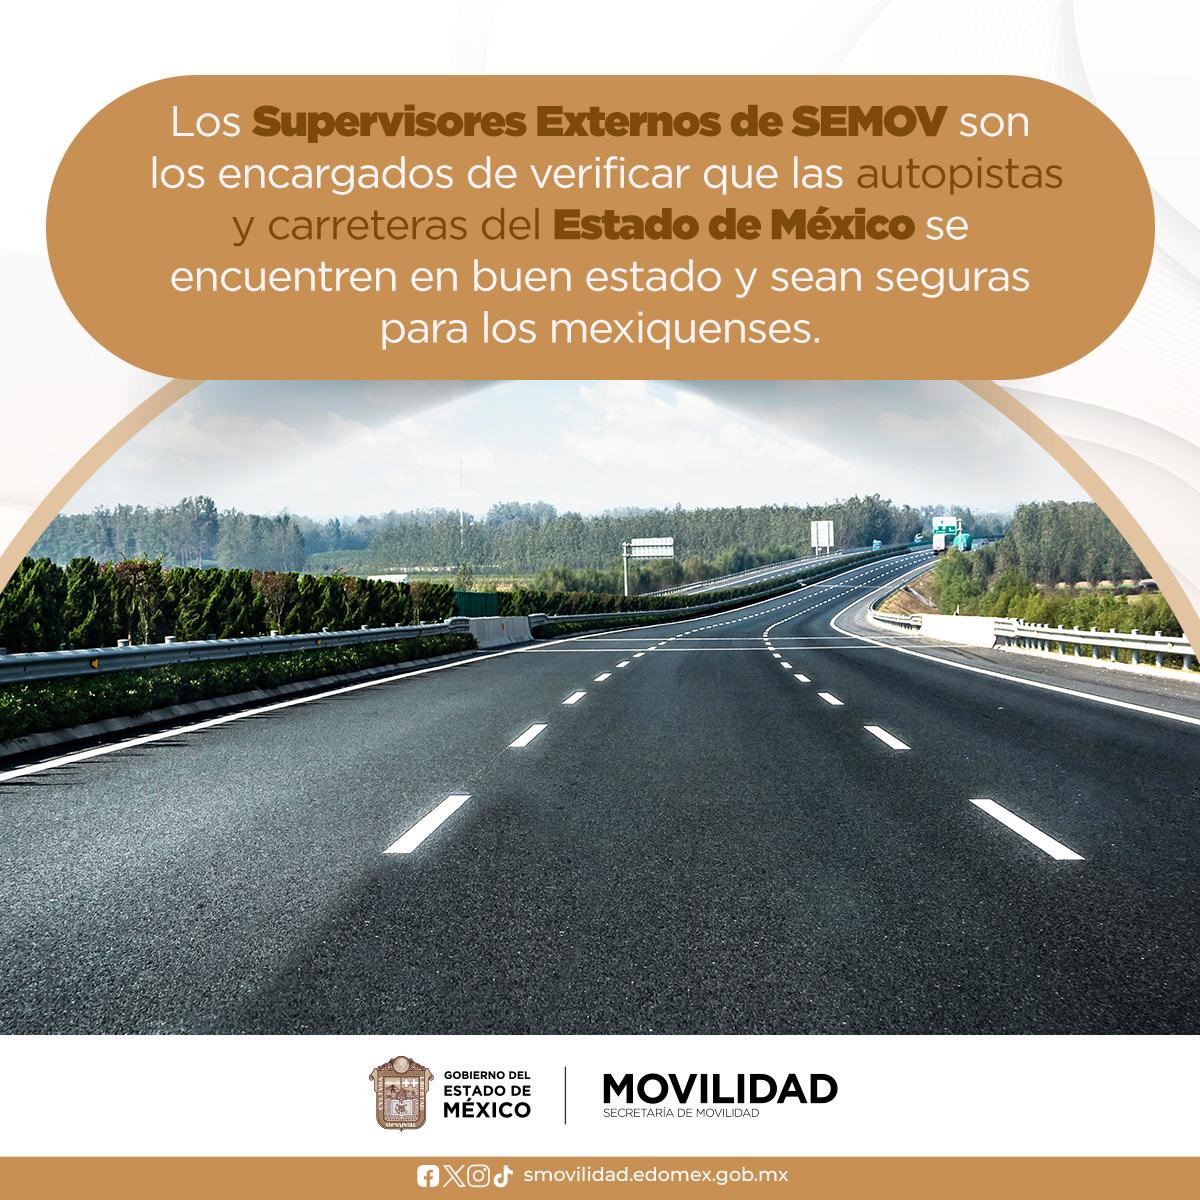 Para garantizar la seguridad de quienes transitan en territorio mexiquense, los Supervisores Externos de SEMOV trabajan en las carreteras para tu tranquilidad 🛣️ #MovilidadParaTodos @SEMOV_Edomex